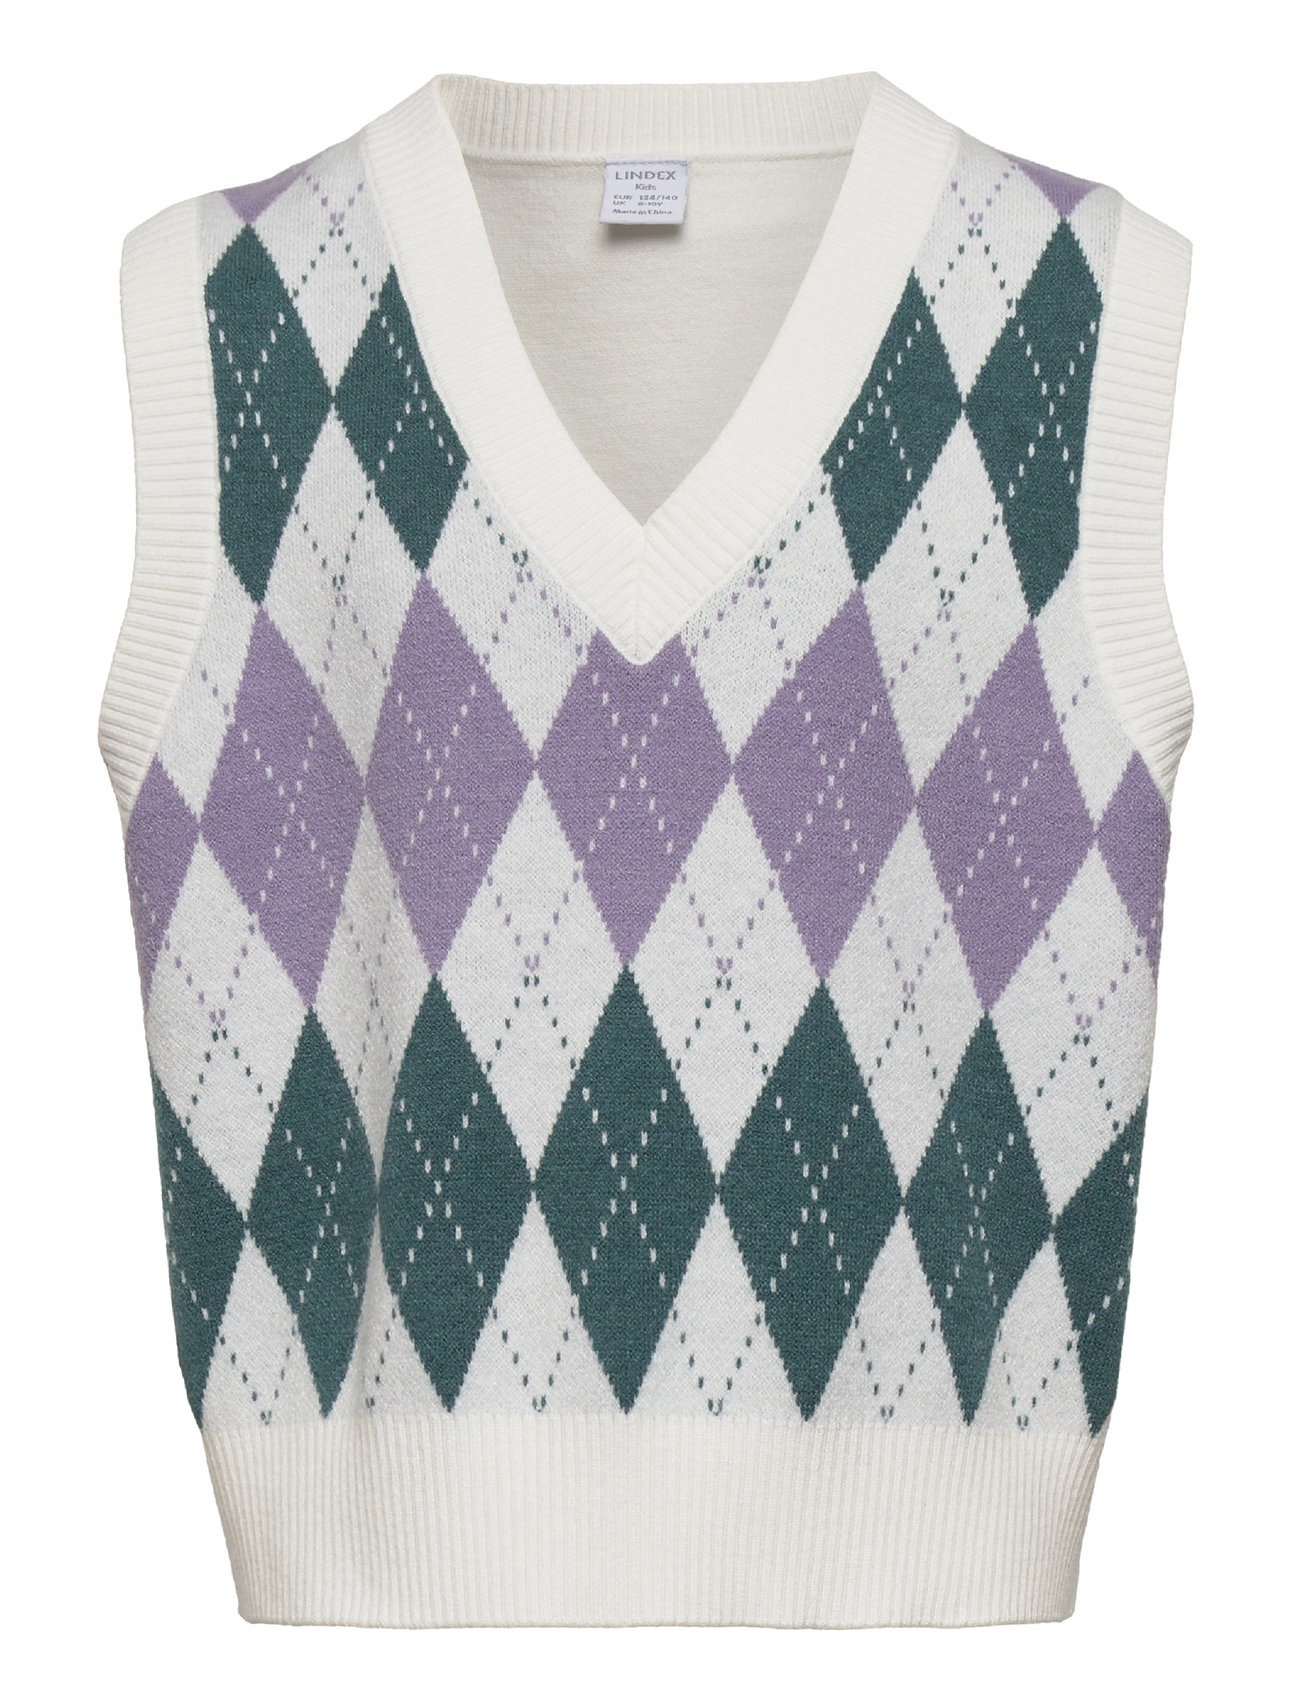 Sweater Vest Argyle Tops Vests Multi/patterned Lindex